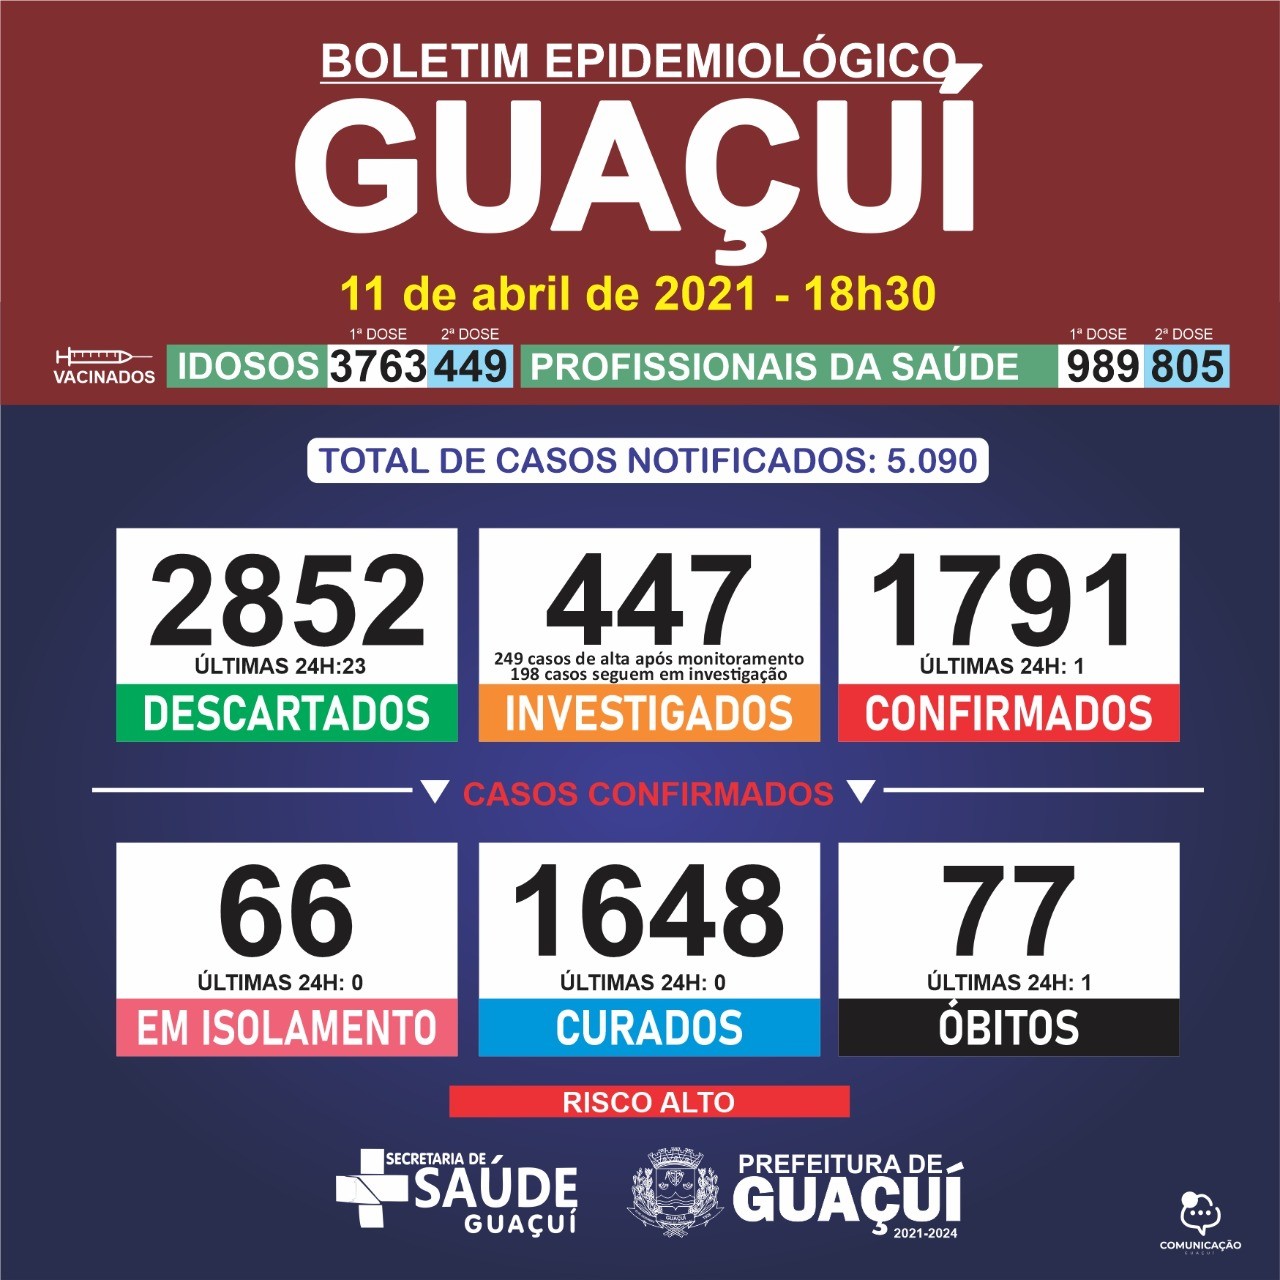 Boletim Epidemiológico 11/04/21: Guaçuí registra 1 óbito e 1 caso confirmado nas últimas 24 horas